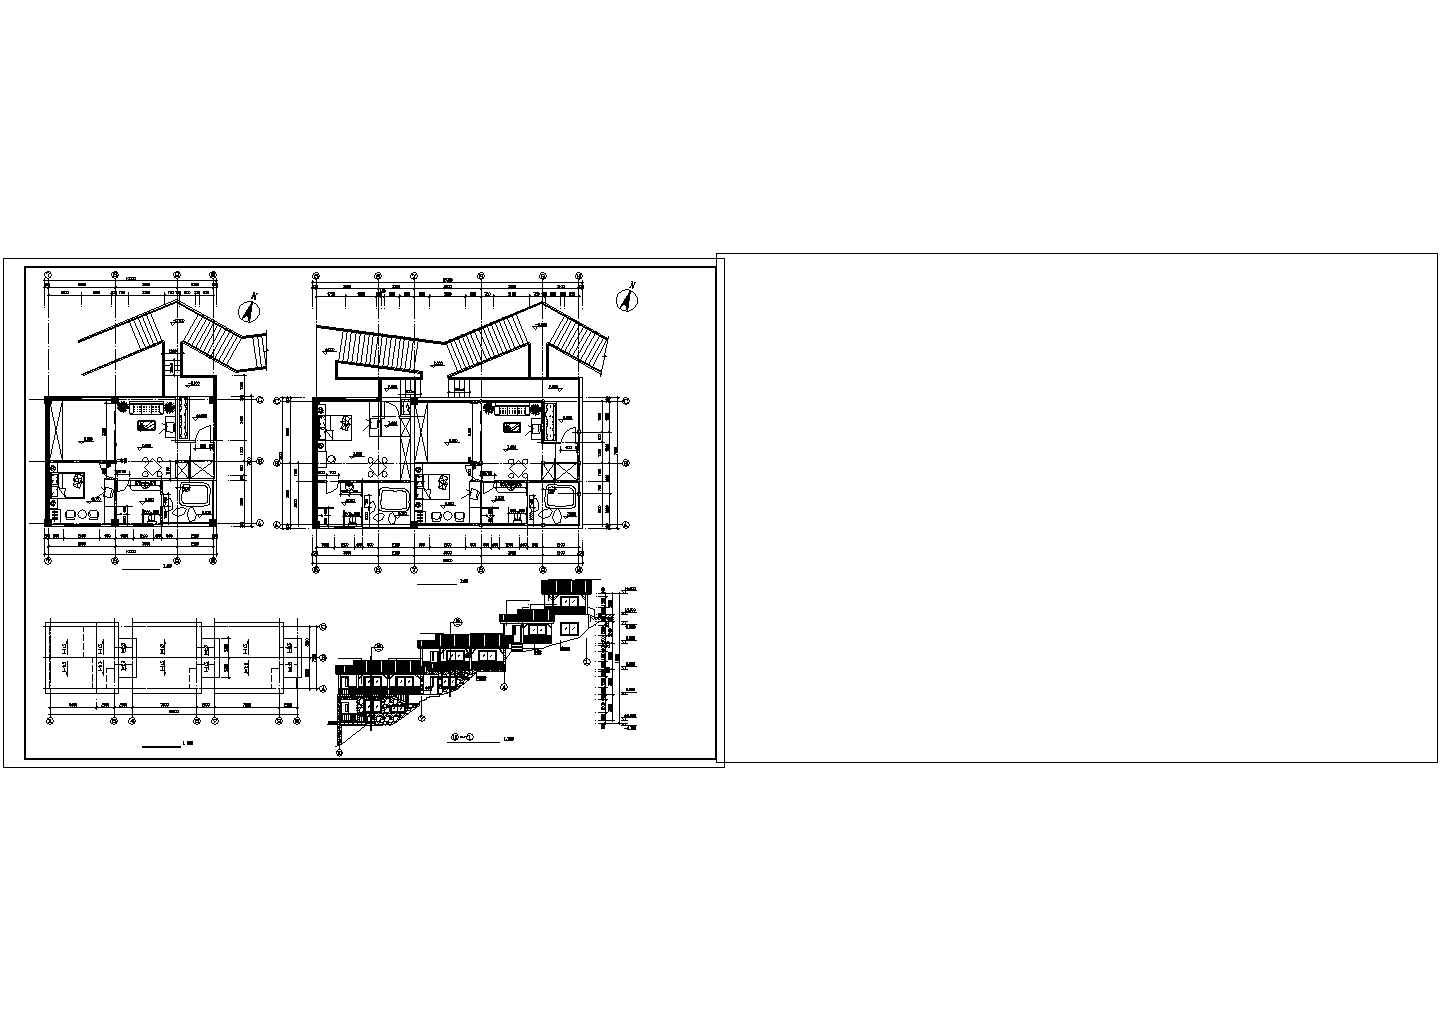 长20米 宽7.6米 五层木屋住宅古建筑设计图